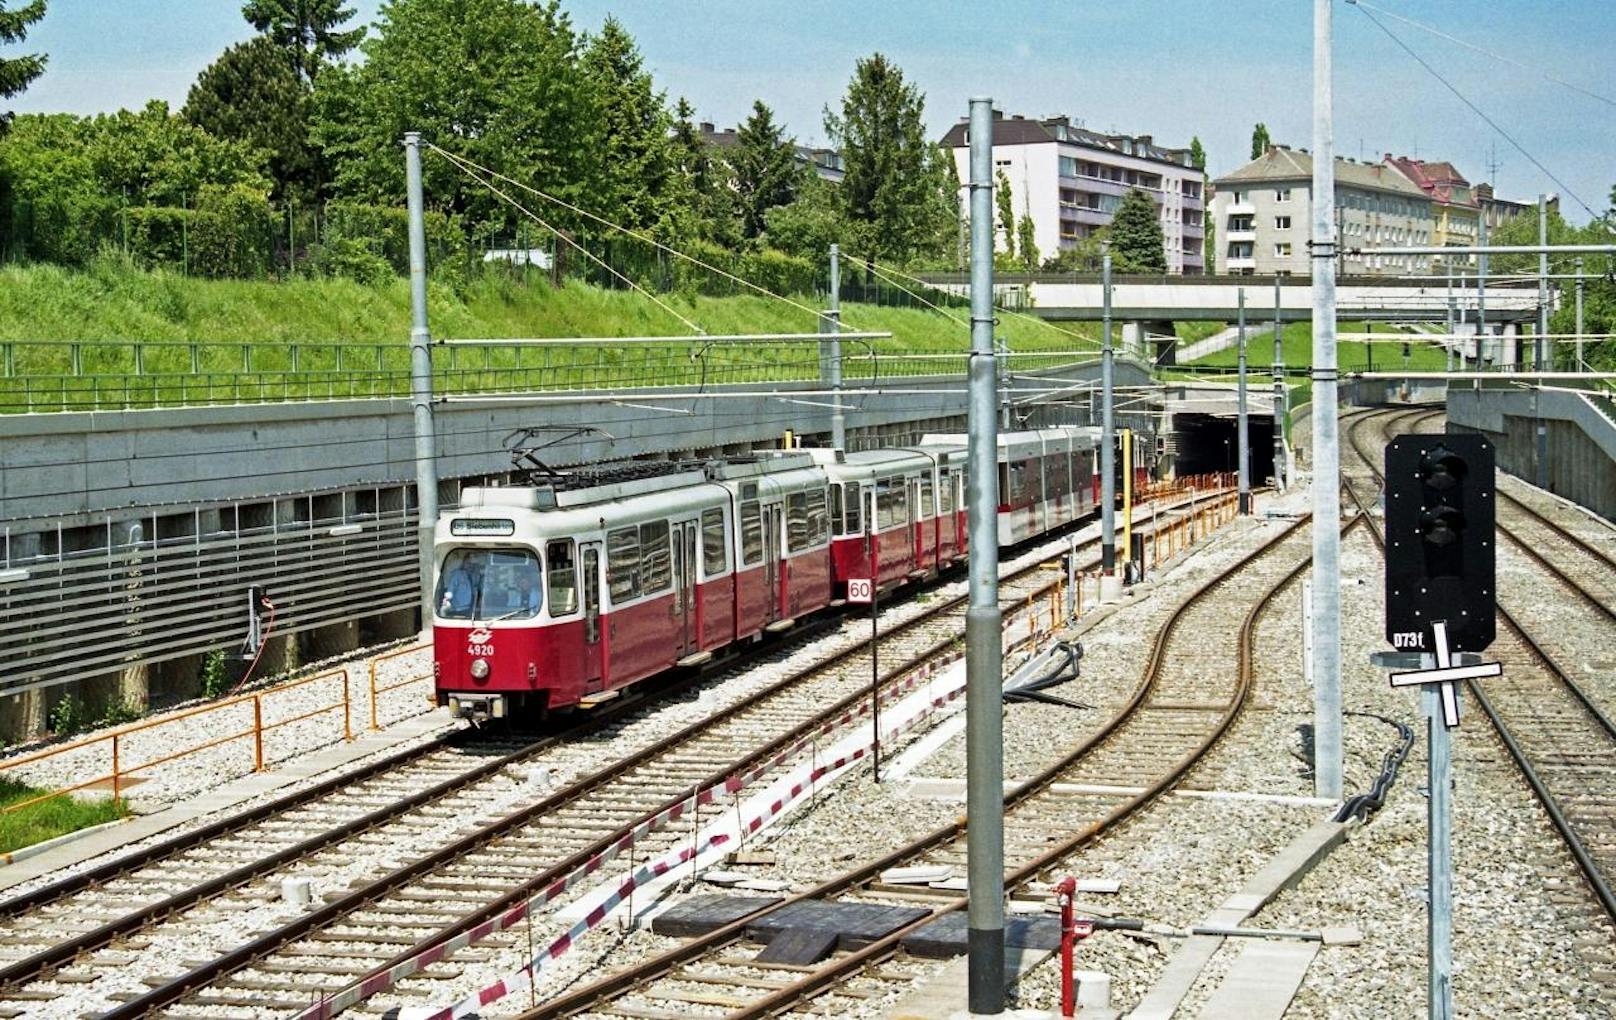 U-Bahn Zug der Linie U6 in Fahrtrichtung Siebenhirten zwischen Meidling und Tschertegasse, Mai 1995